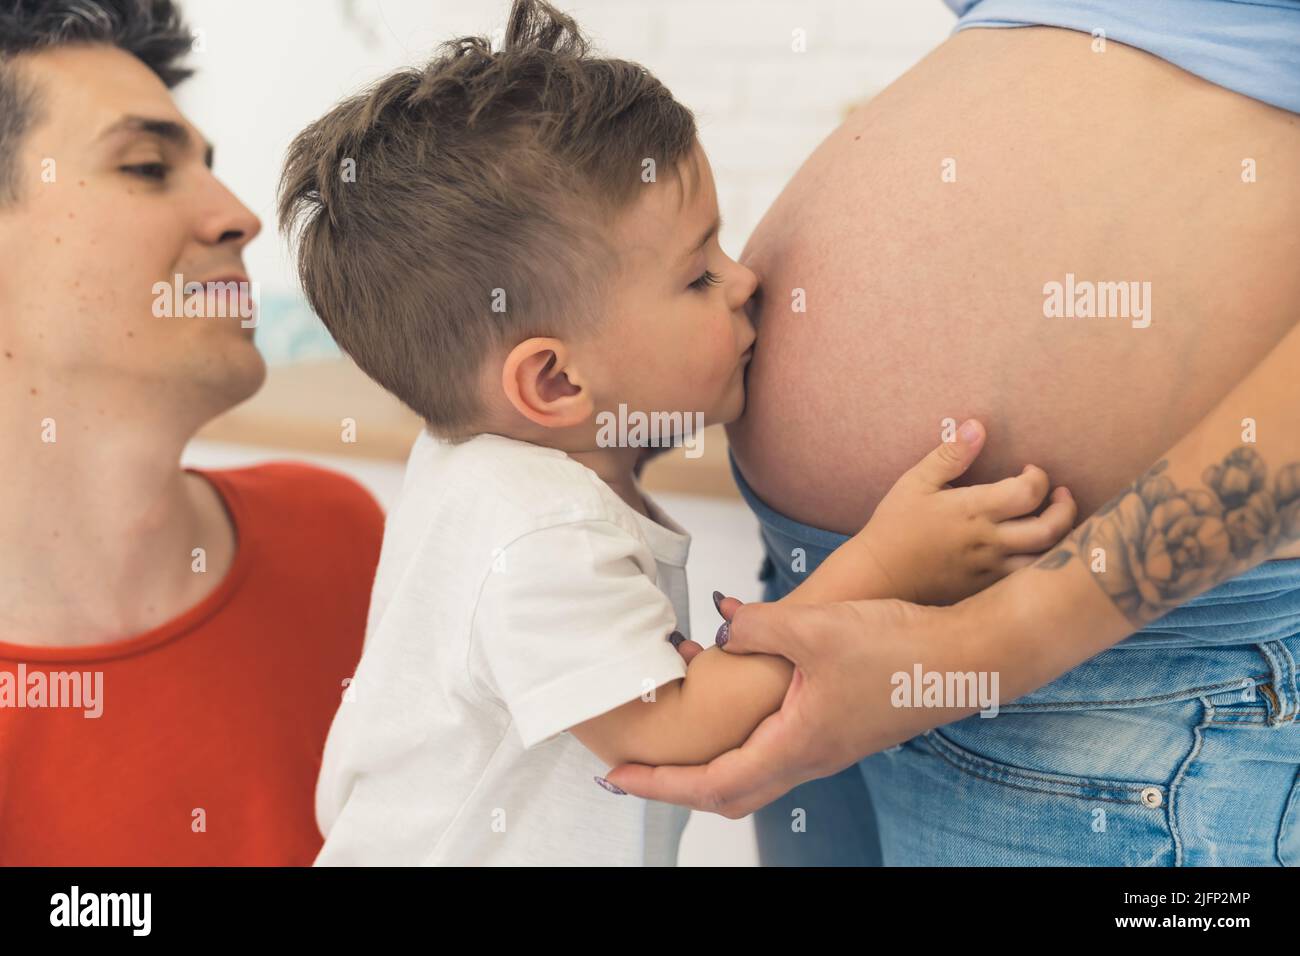 Ya te amo, bebé, niño besando el vientre de su madre embarazada. Fotografía de alta calidad Foto de stock